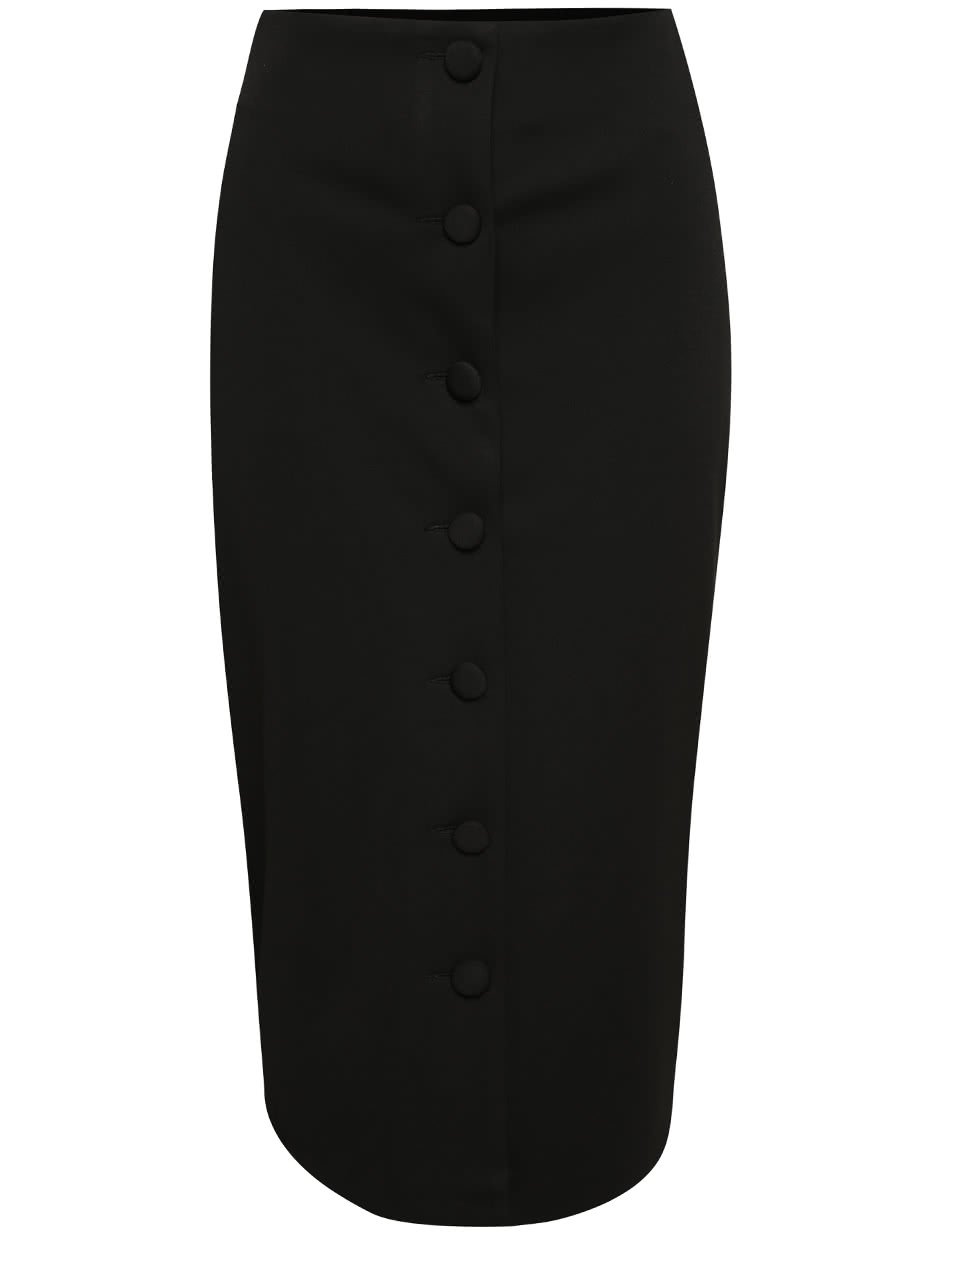 Černá pouzdrová midi sukně s knoflíky Dorothy Perkins